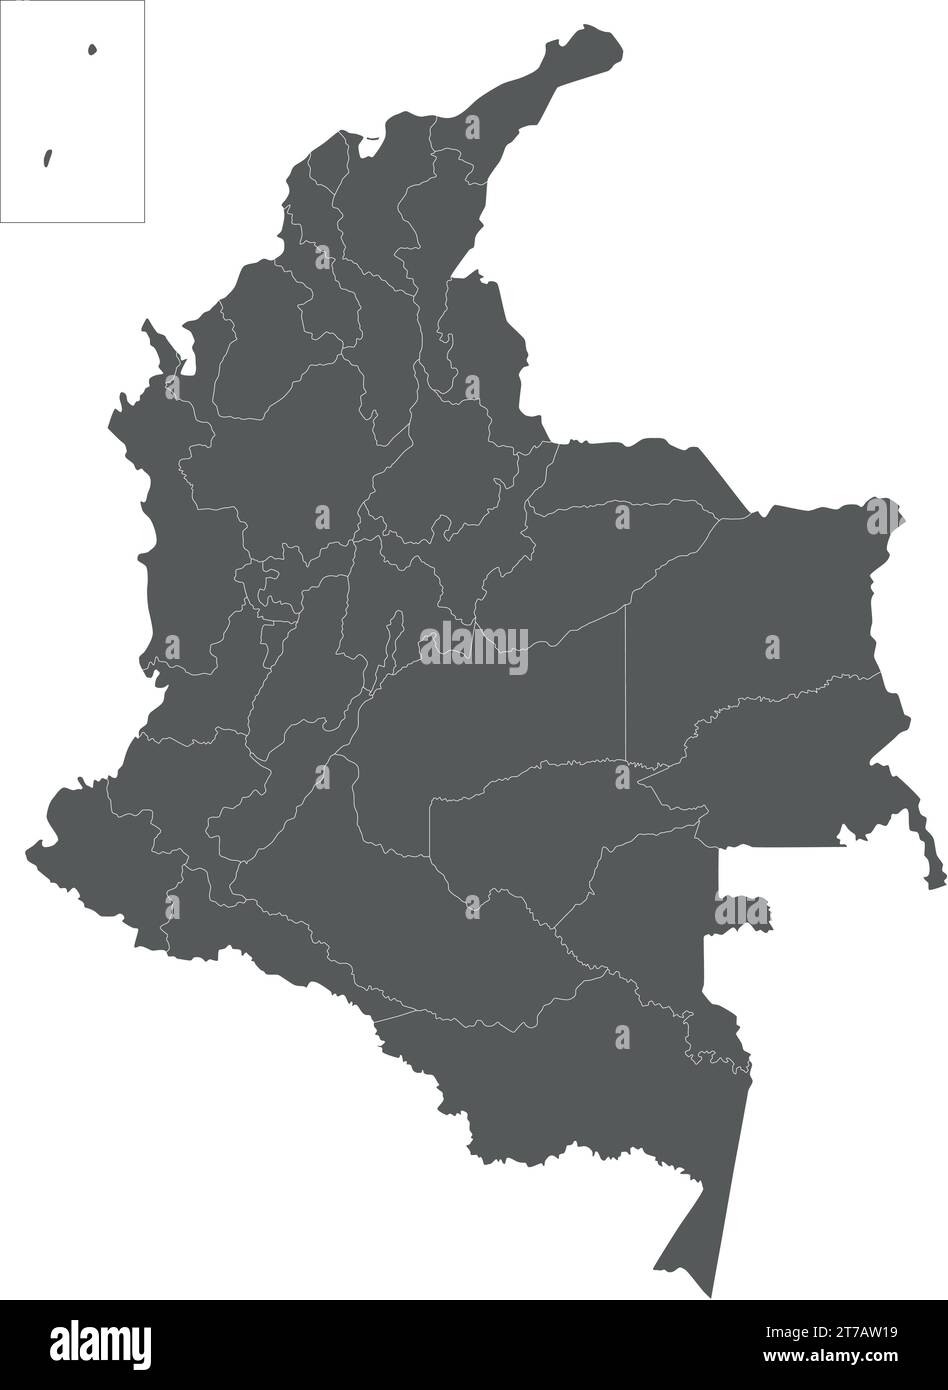 Mappa vettoriale vuota della Colombia con dipartimenti, regione capitale e divisioni amministrative. Livelli modificabili e chiaramente etichettati. Illustrazione Vettoriale